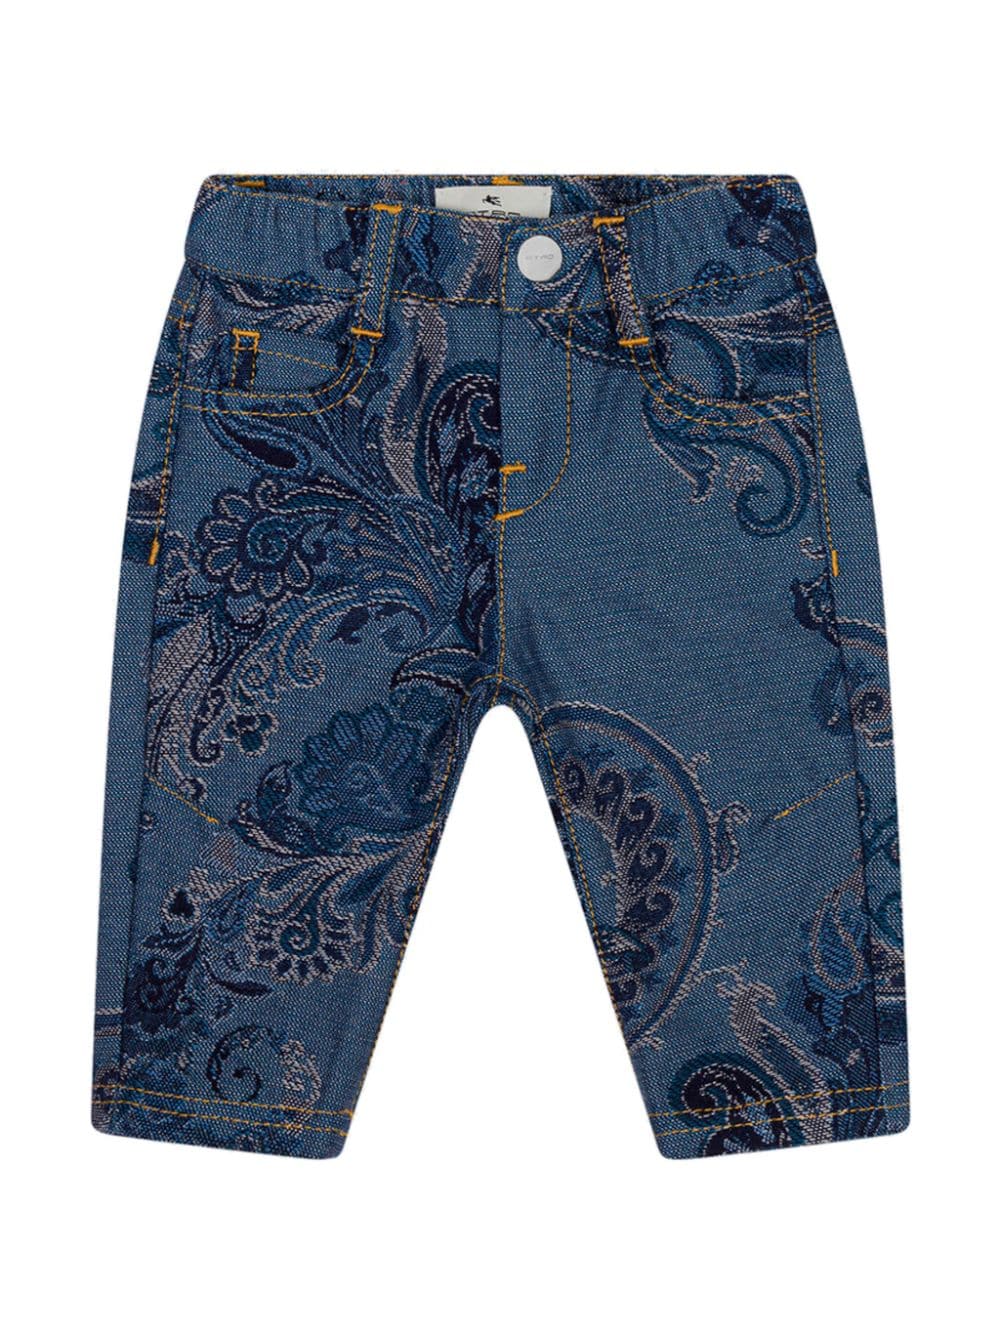 ETRO KIDS jacquard jeans - Blue von ETRO KIDS